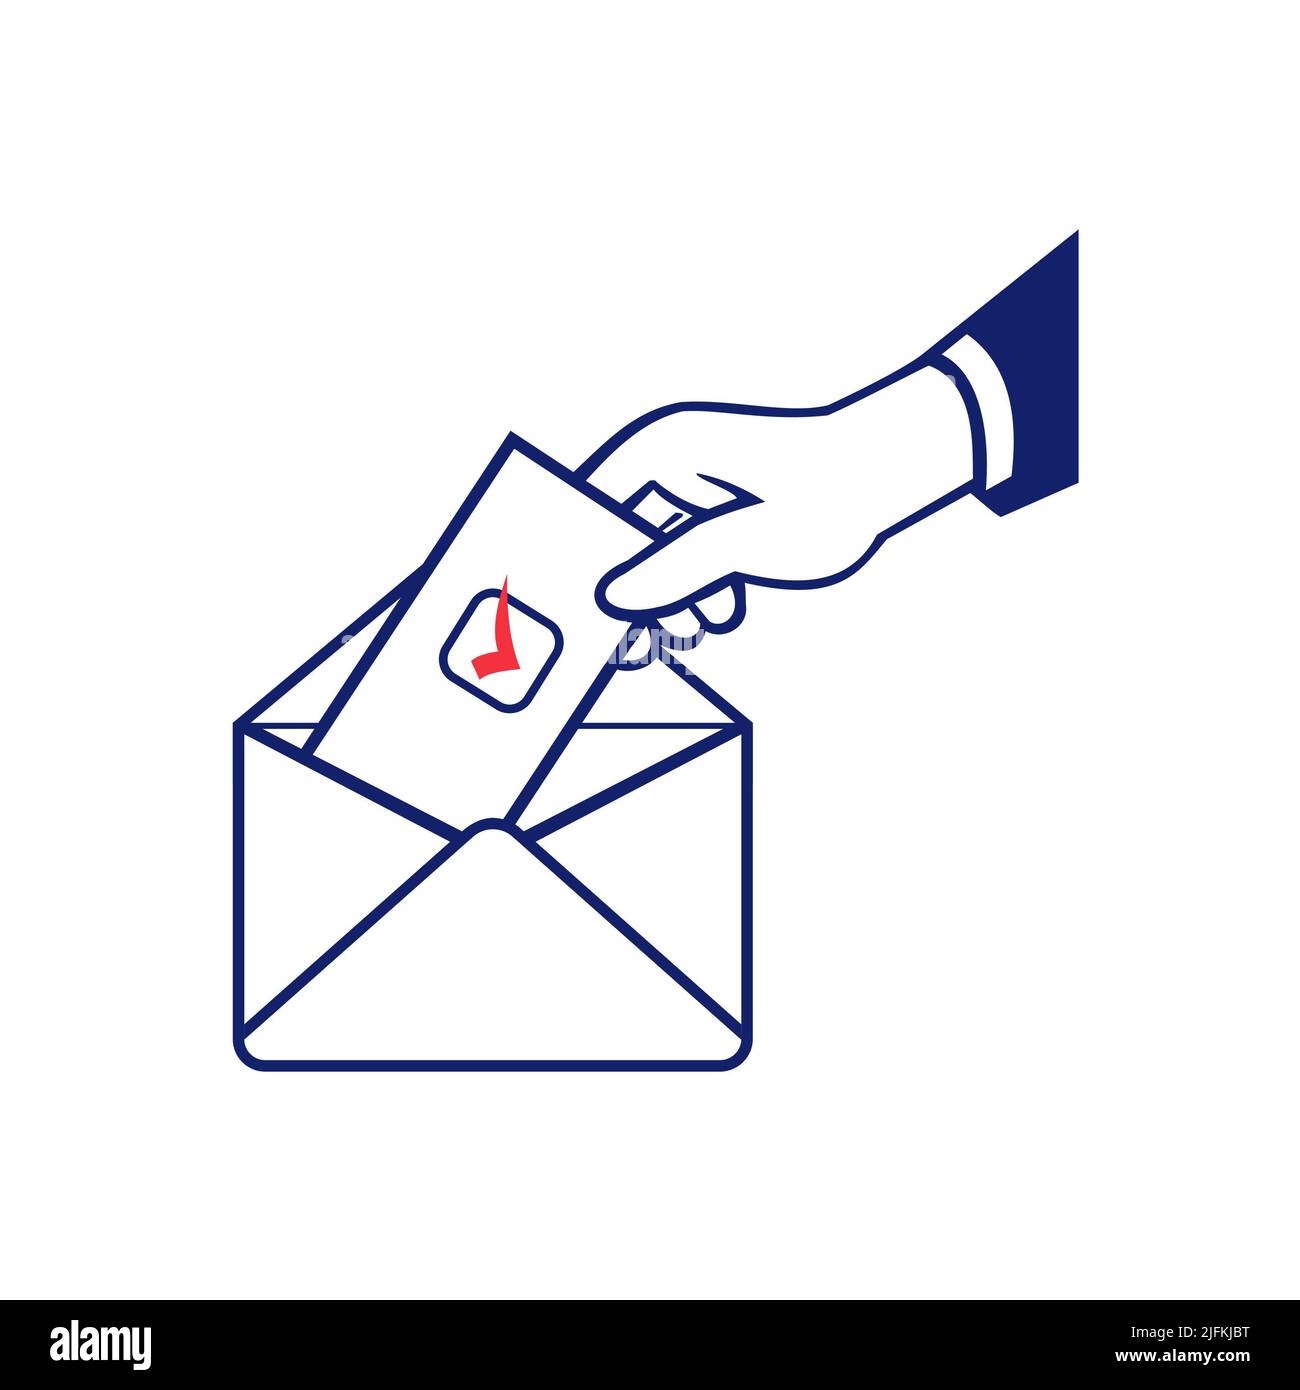 Vote use. Специальные конверты для голосования. Герб на урну для голосования. Ящик для голосования на прозрачном фоне.